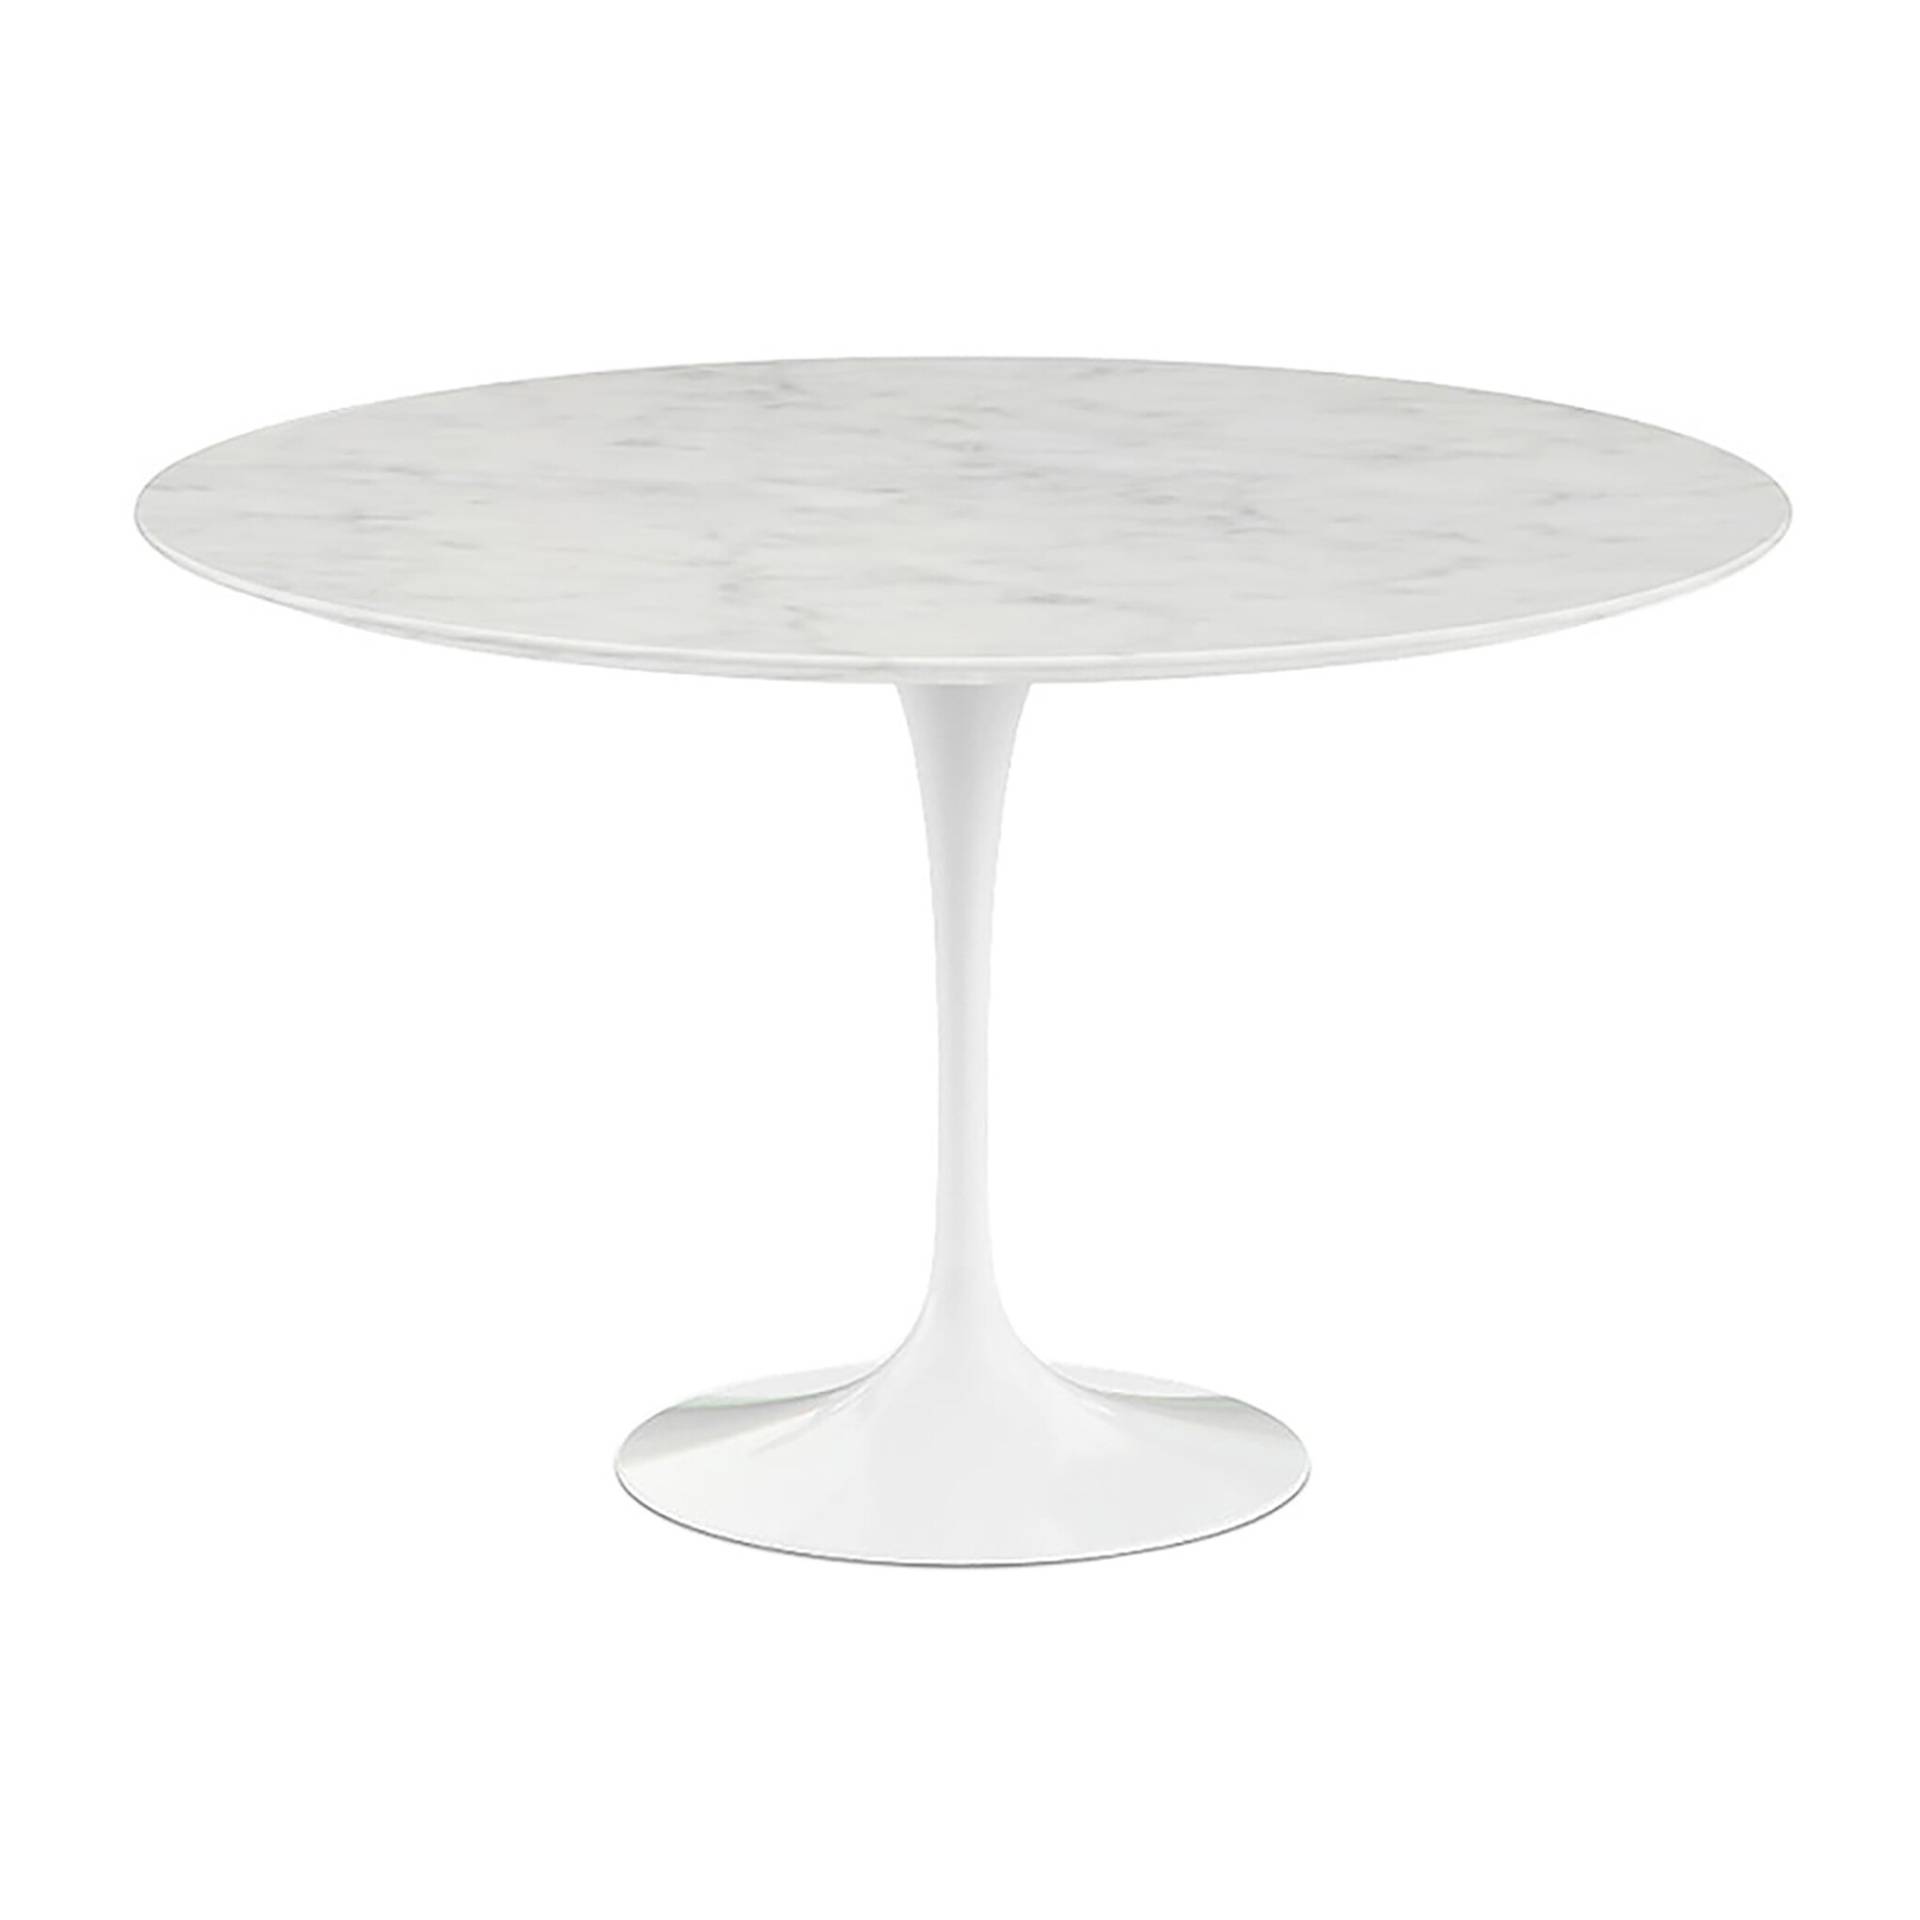 Knoll International - Saarinen Tisch Ø120cm - weiß/Mamor Statuarietto/H x Ø 73x120cm/Gestell weiß von Knoll International